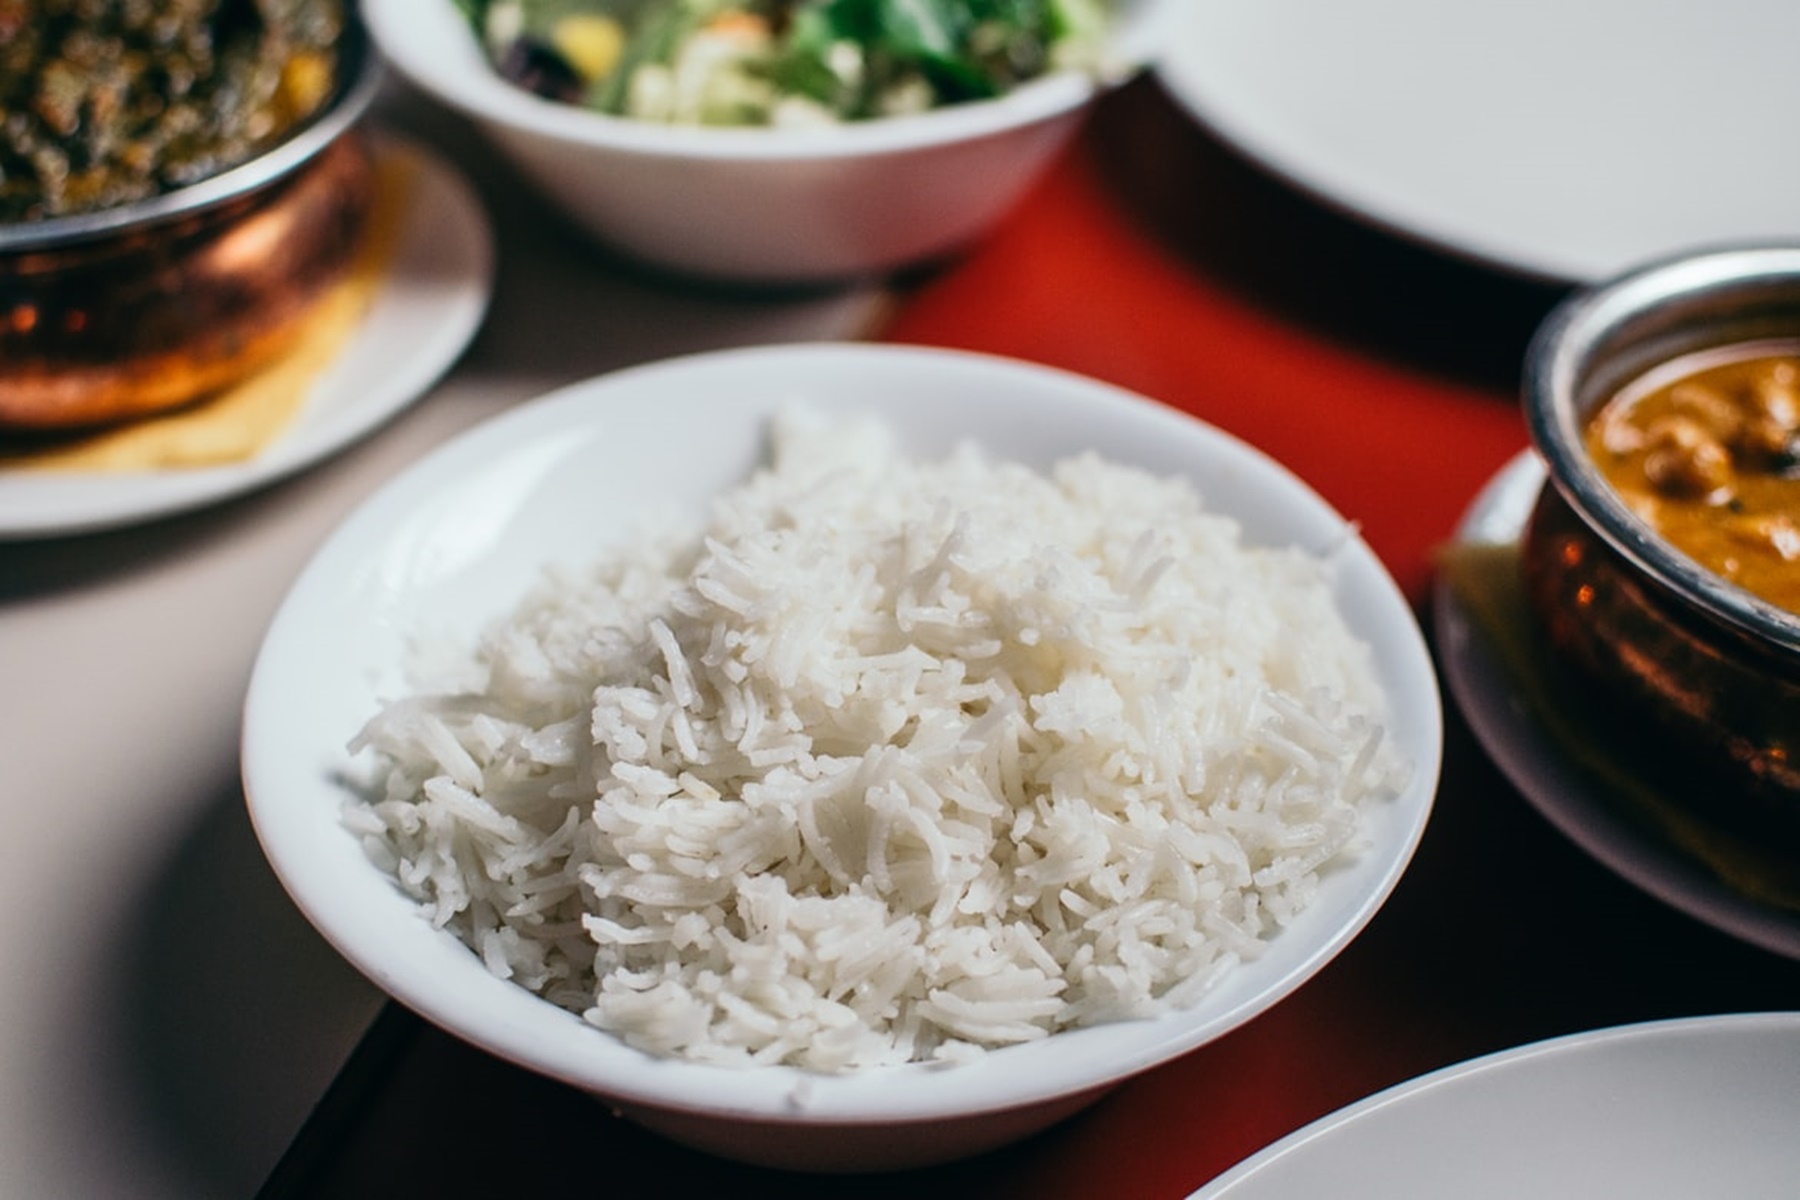 Συμβουλές μαγείρεμα ρύζι: Τι πρέπει να ξέρουμε για να γίνει τέλειο